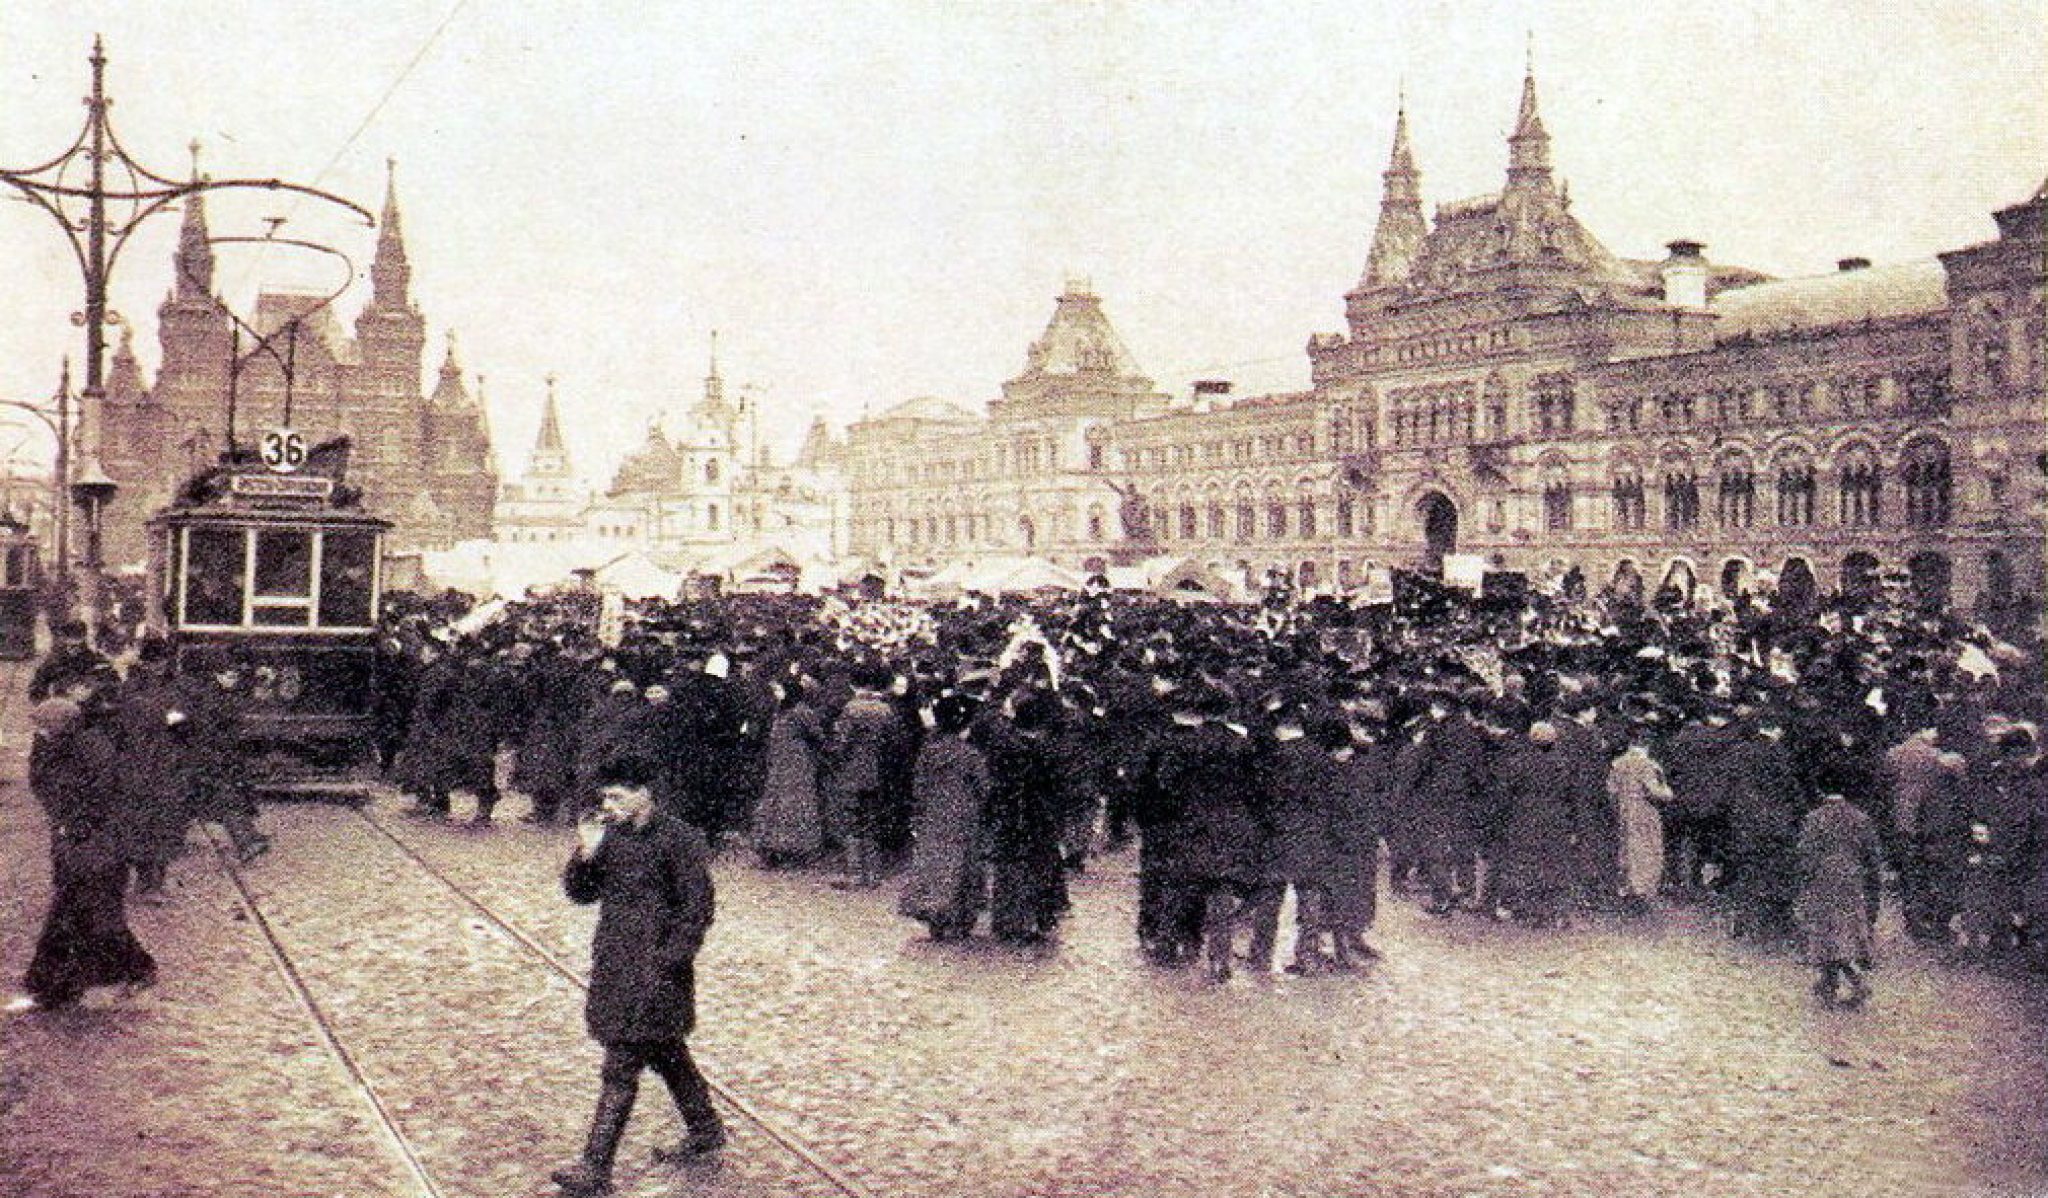 Российские революции начала 20 века